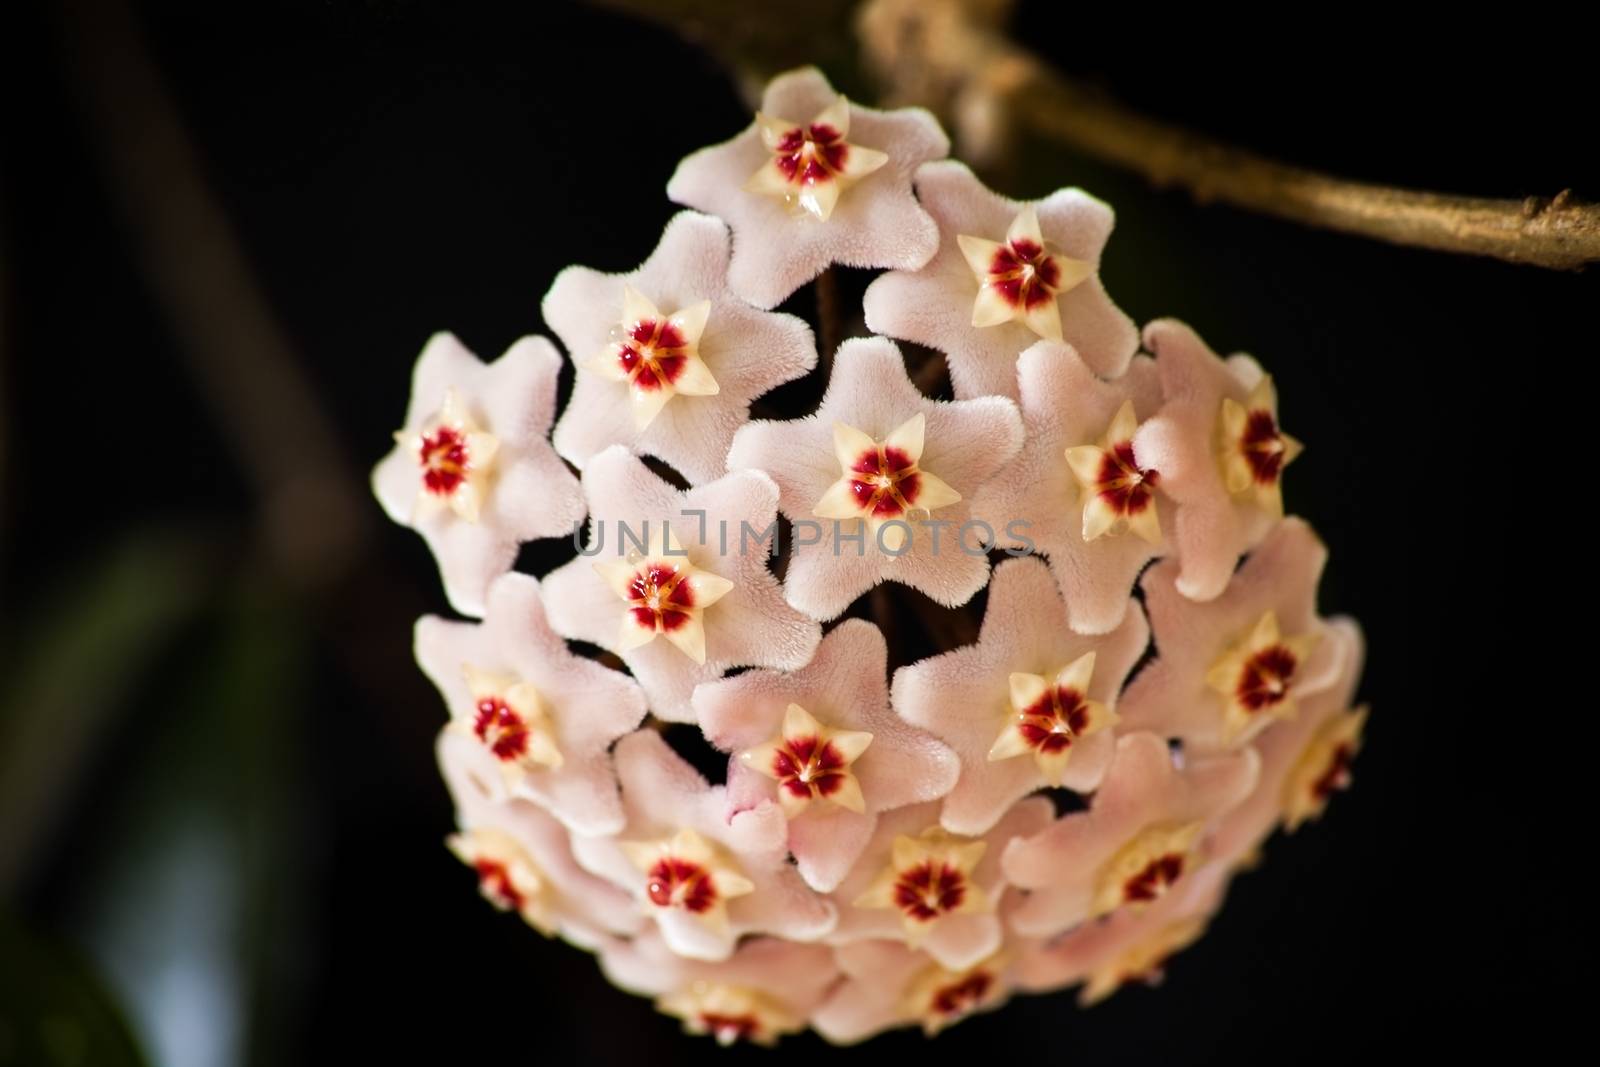 Macro Image of the flower of the Hoya Waxplant